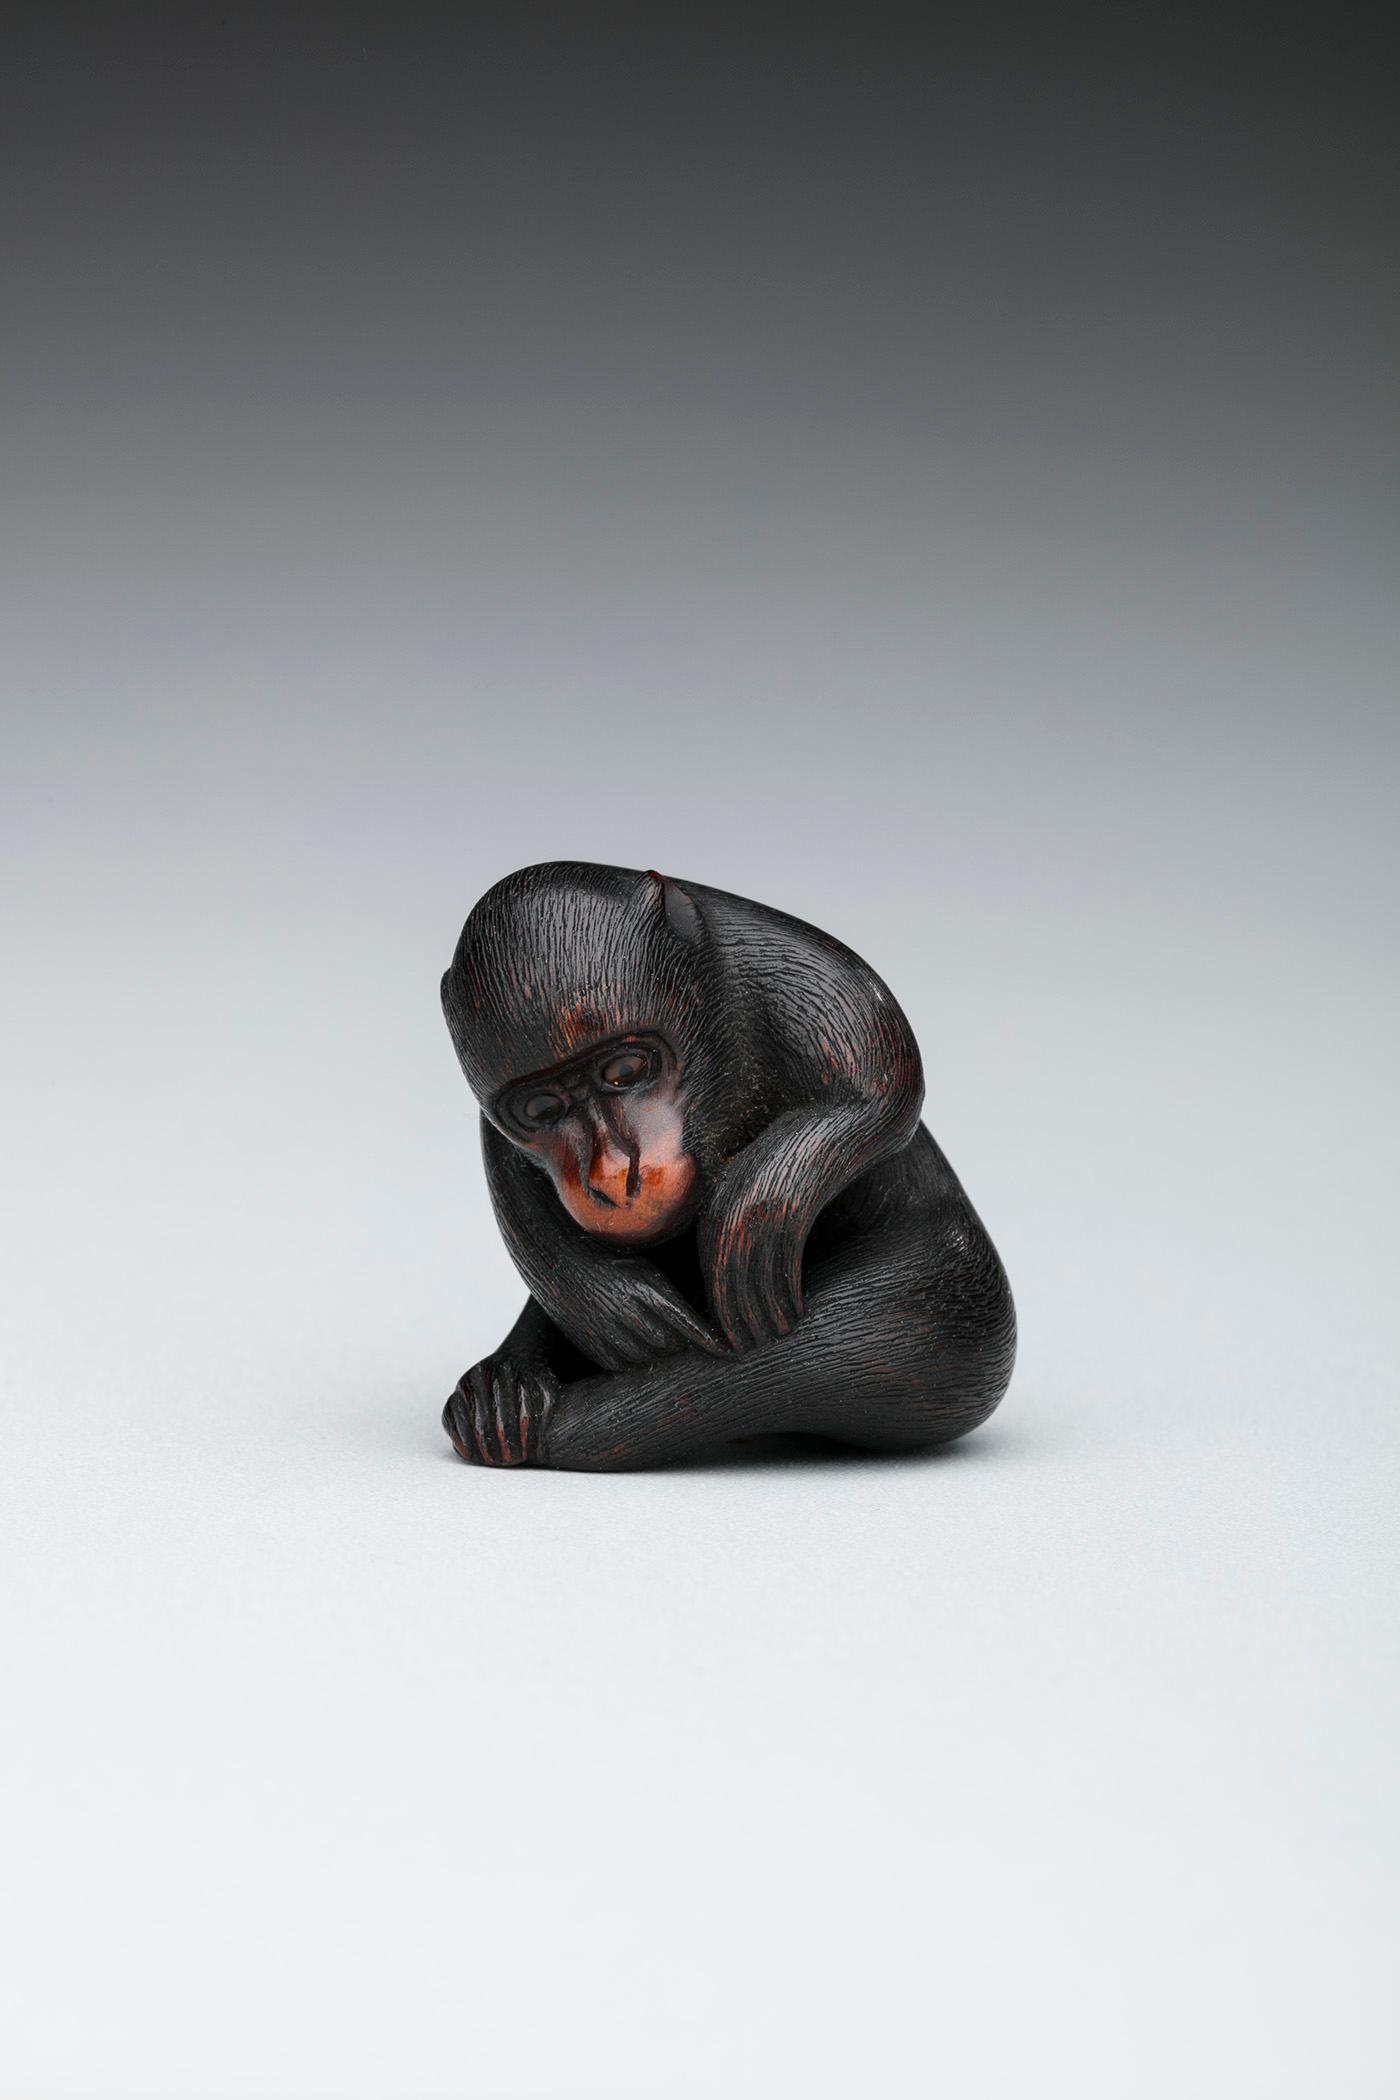 نتسوکه: میمون نشسته در حال برداشتن یک کک by Unknown Artist - قرن نوزدهم 